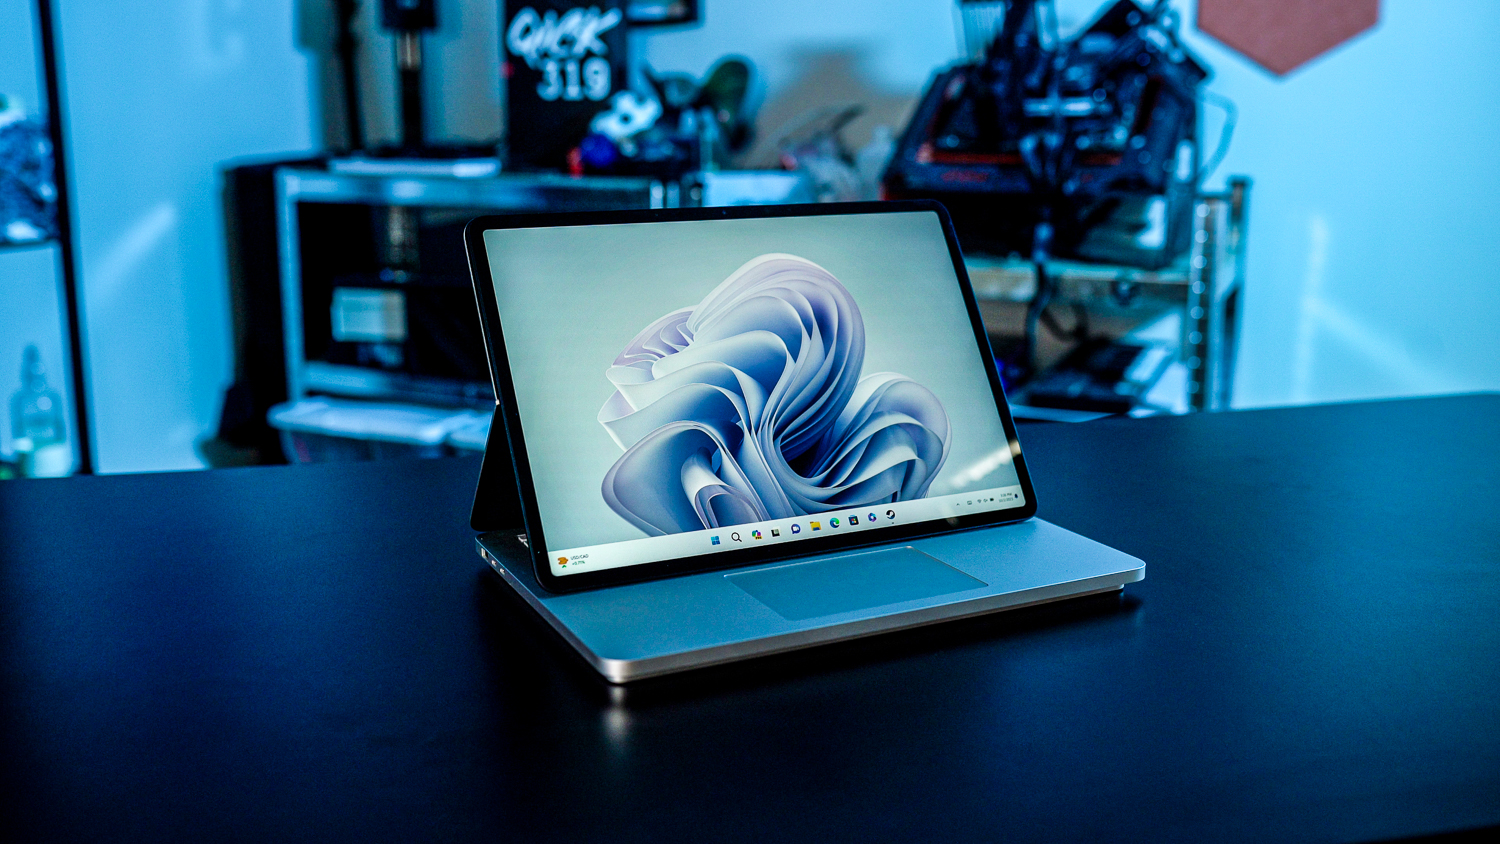 माइक्रोसॉफ्ट सर्फेस लैपटॉप 2 एक मेज पर बैठा है।